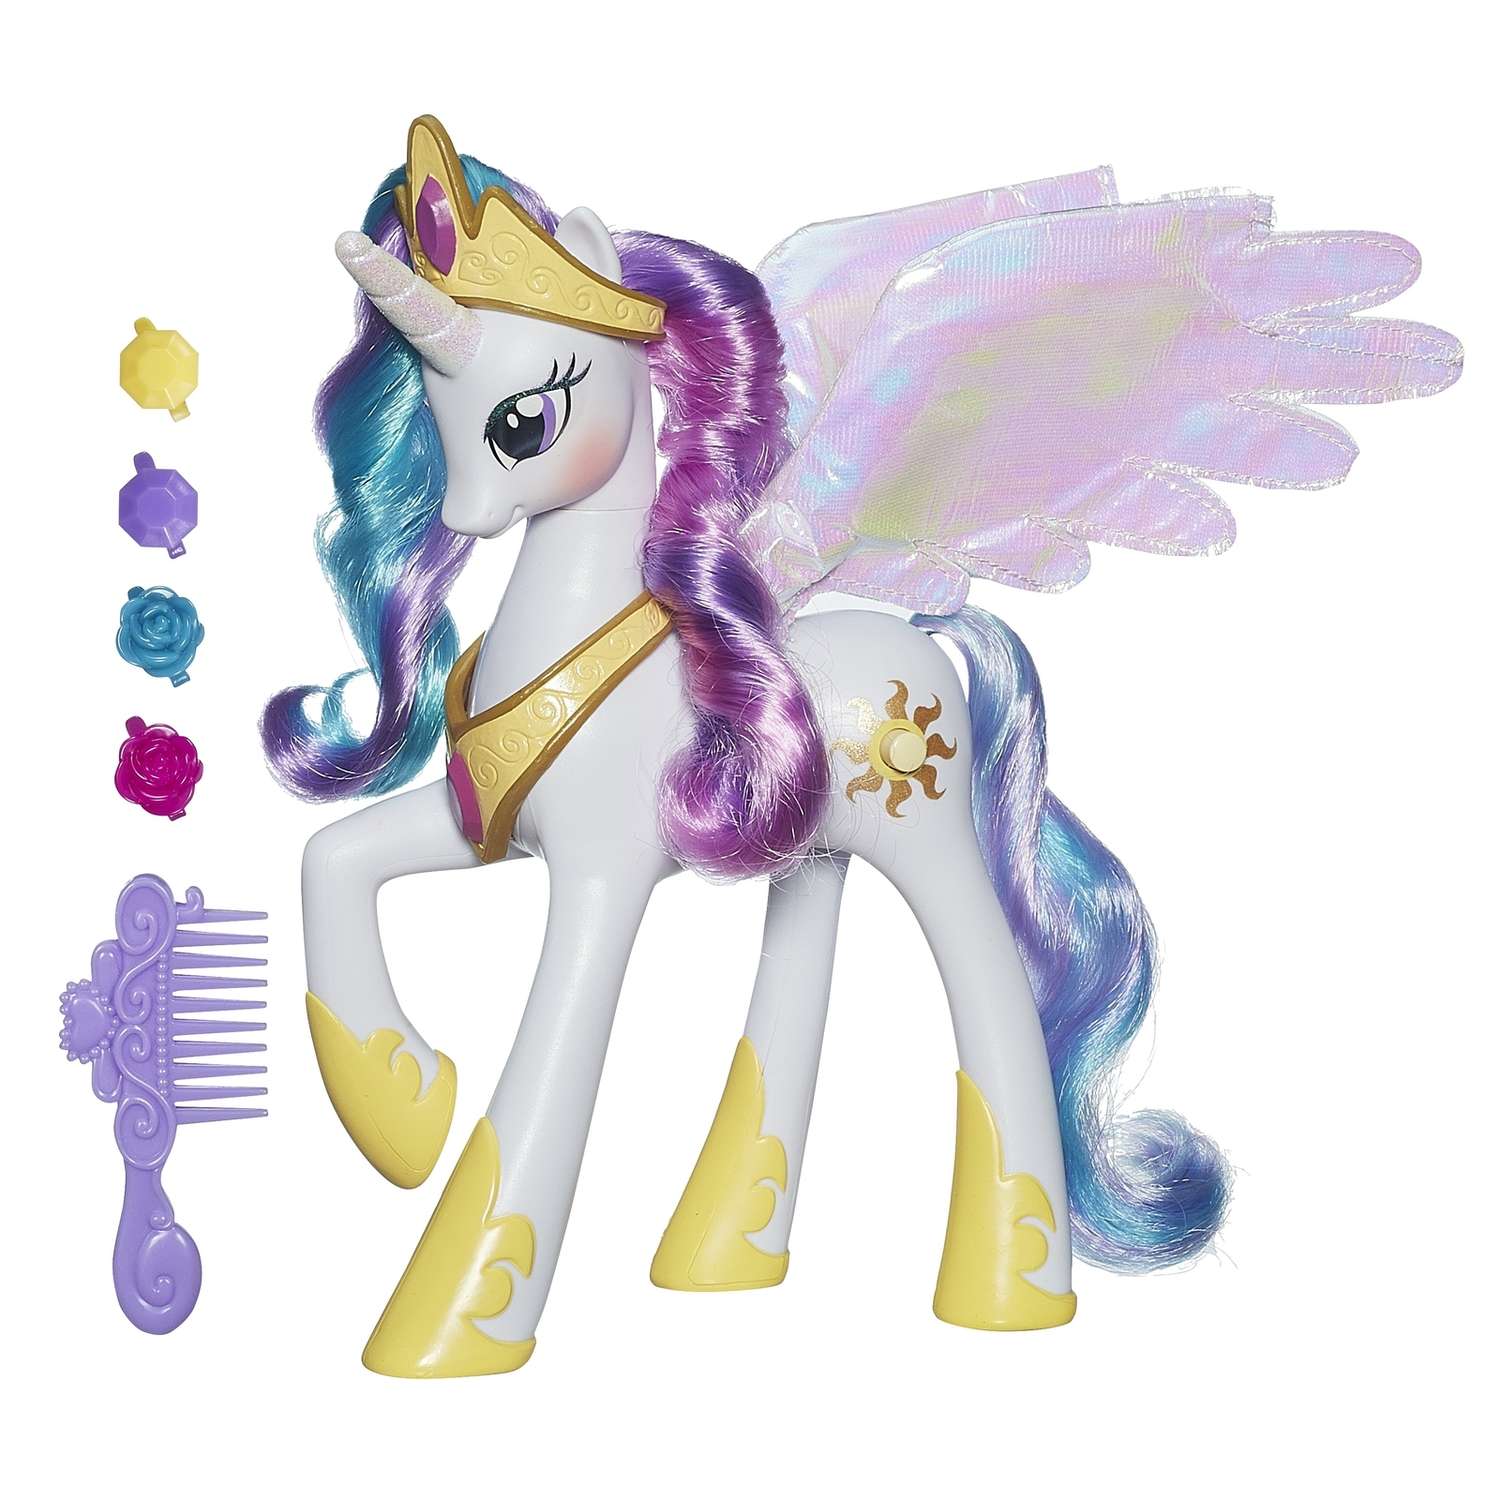 Лошадки литл пони. Фигурка Hasbro принцесса Селестия a0633. Hasbro my little Pony a0633 принцесса Селестия. My little Pony принцесса Селестия игрушка. My little Pony принцесса Селестия игрушки Хасбро.